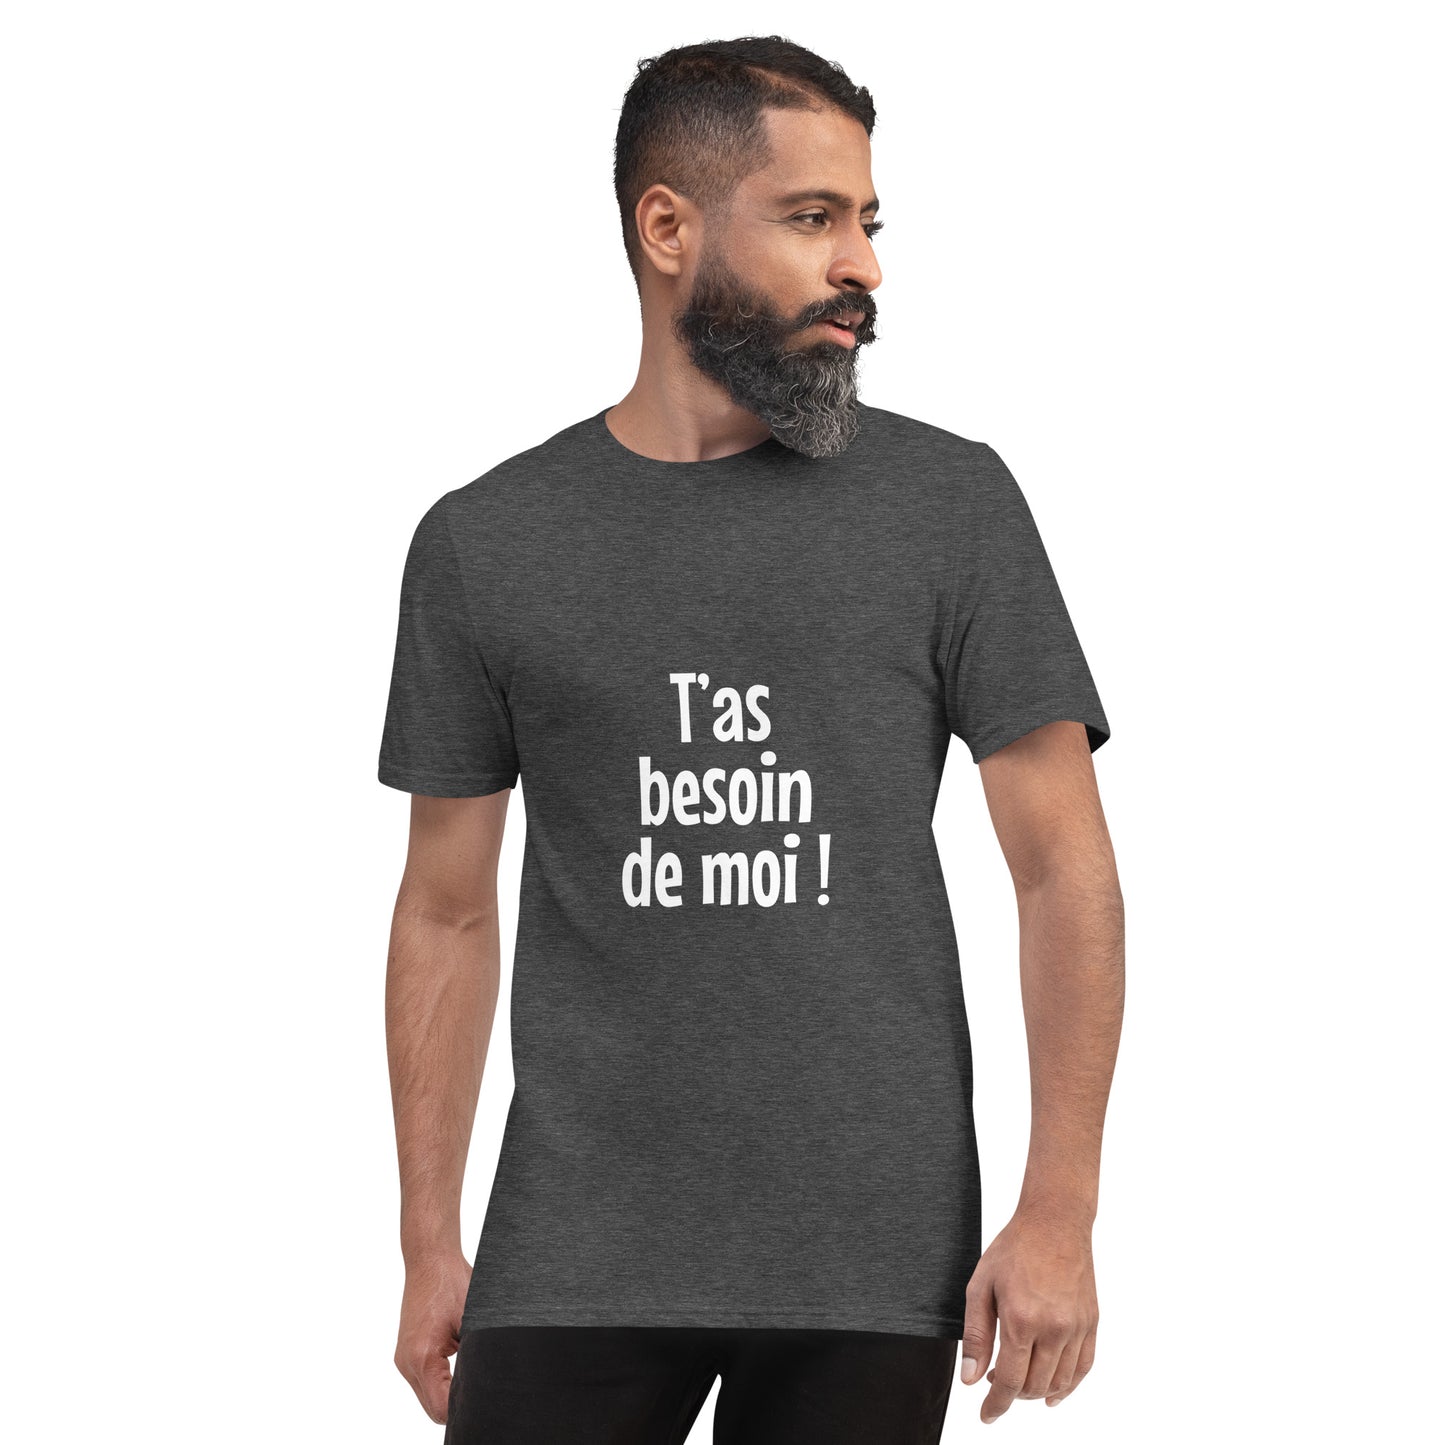 T'as besoin de moi - Men's T-Shirt